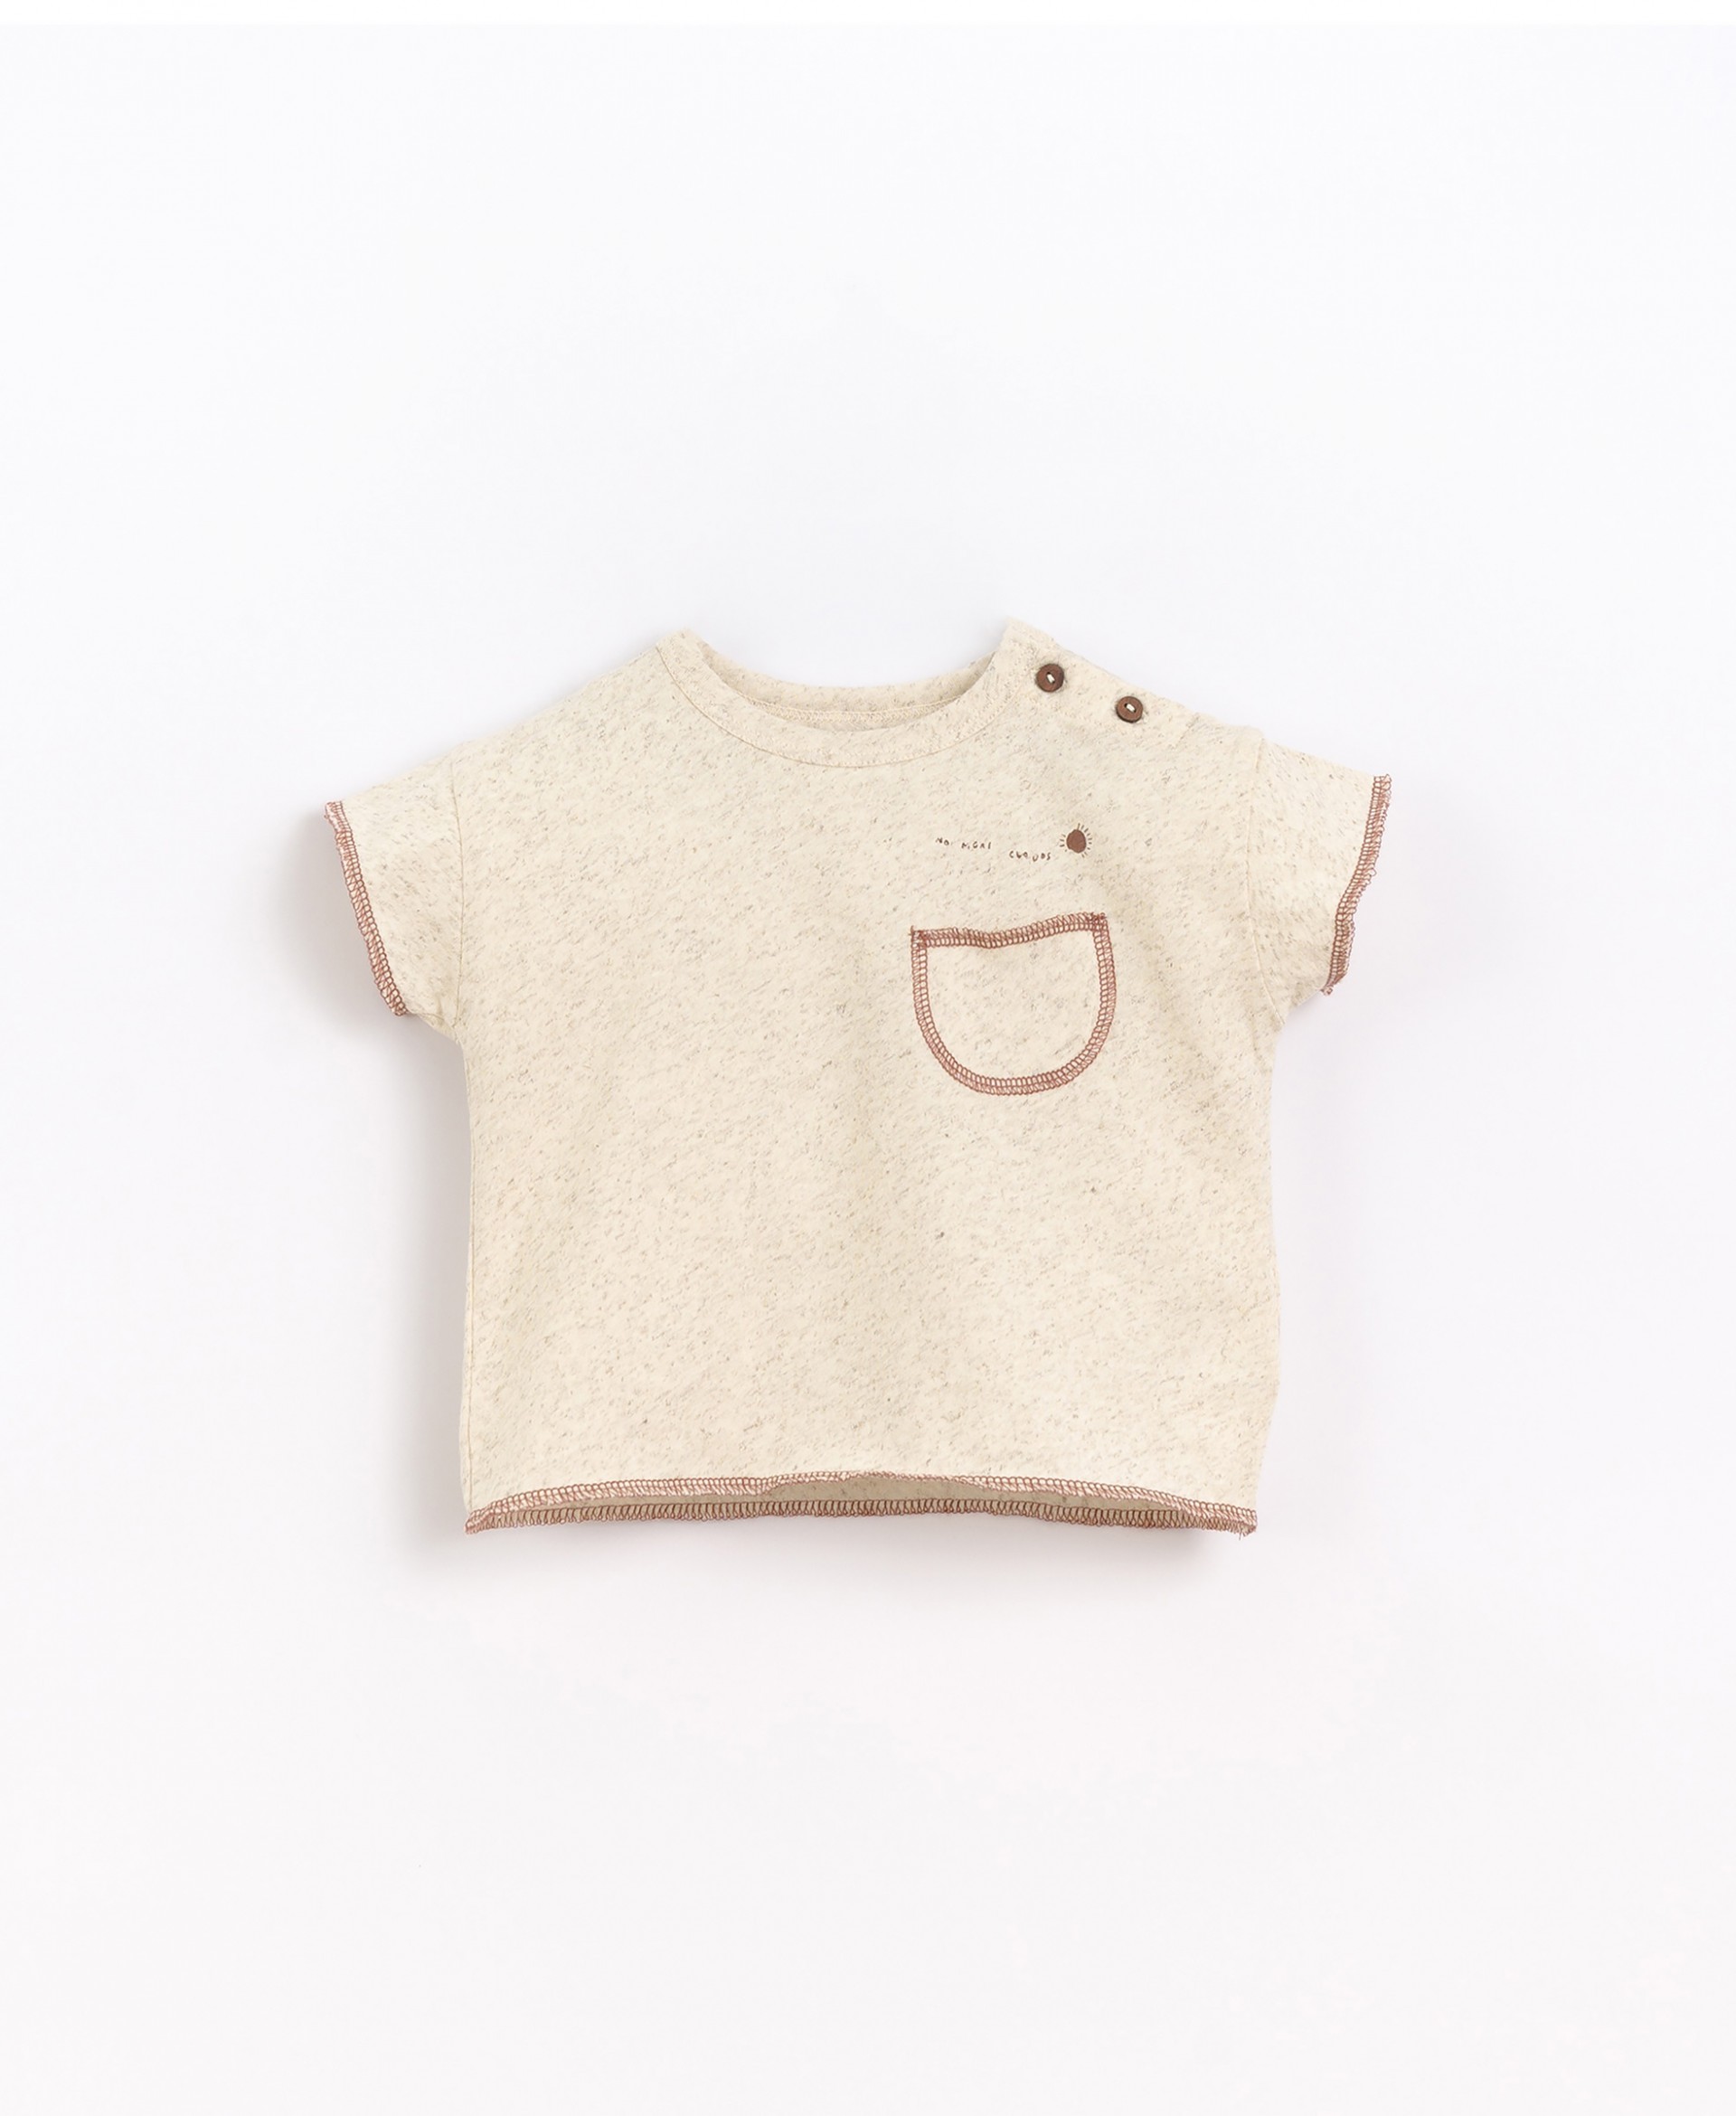 T-shirt mistura de algodão orgânico e cânhamo | Basketry